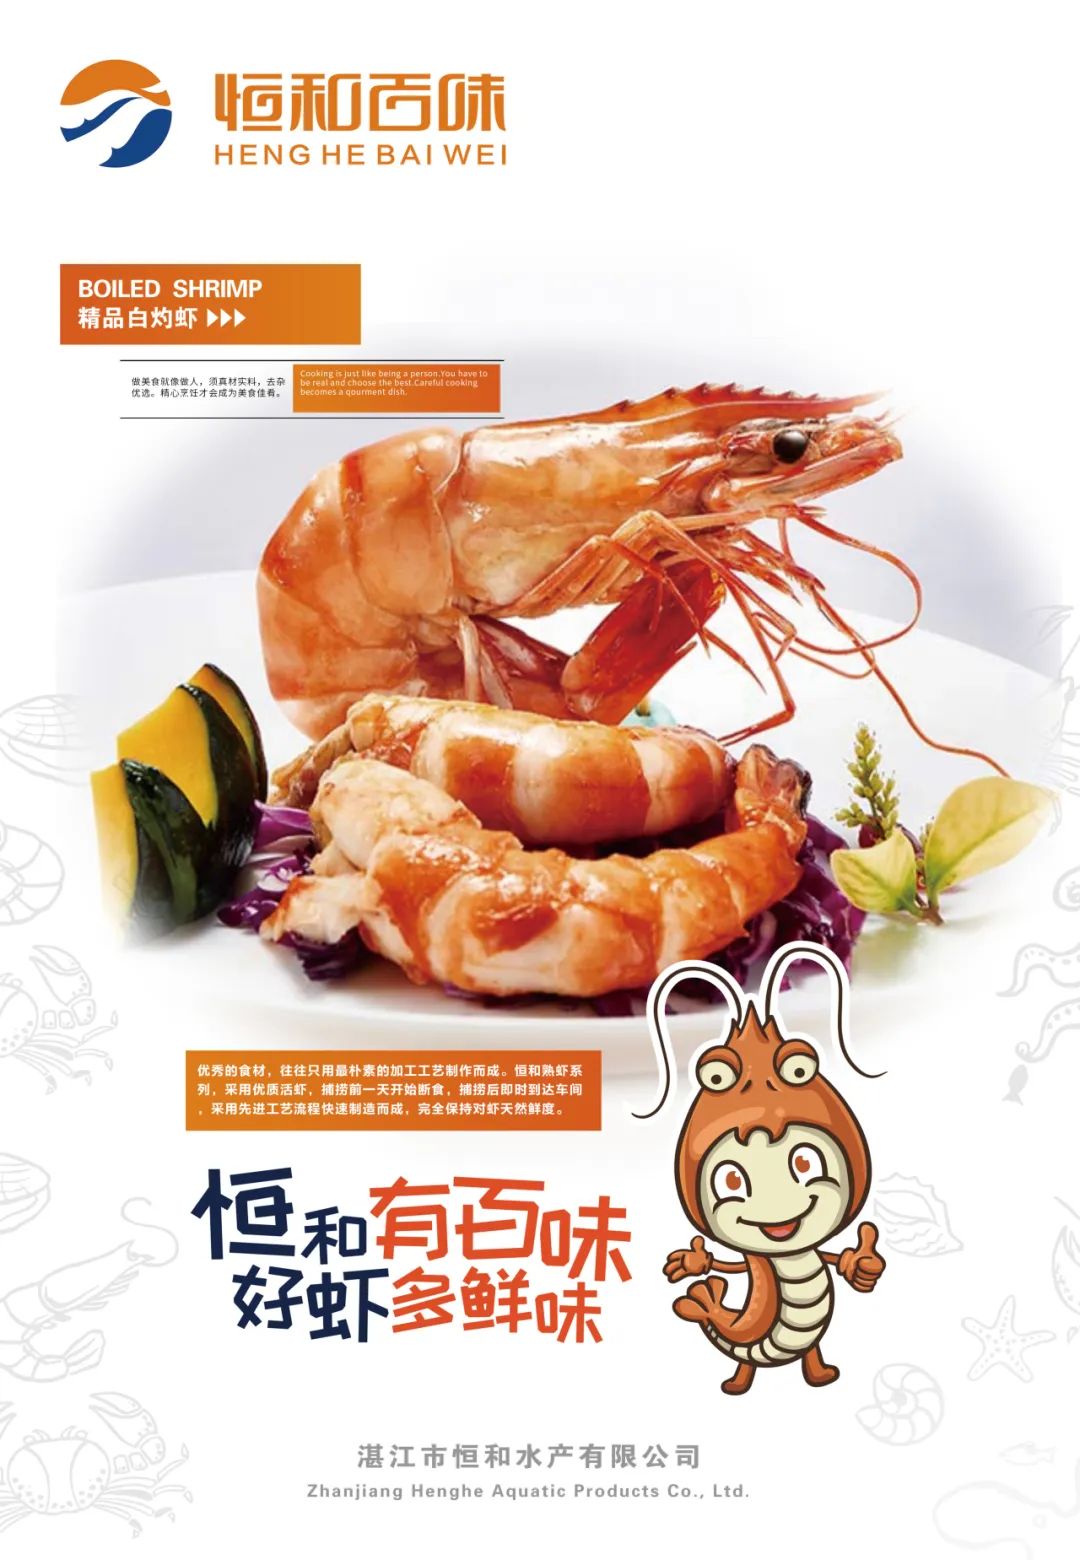 湛江市恒和水产有限公司——恒和有百味，好虾多鲜味(图5)